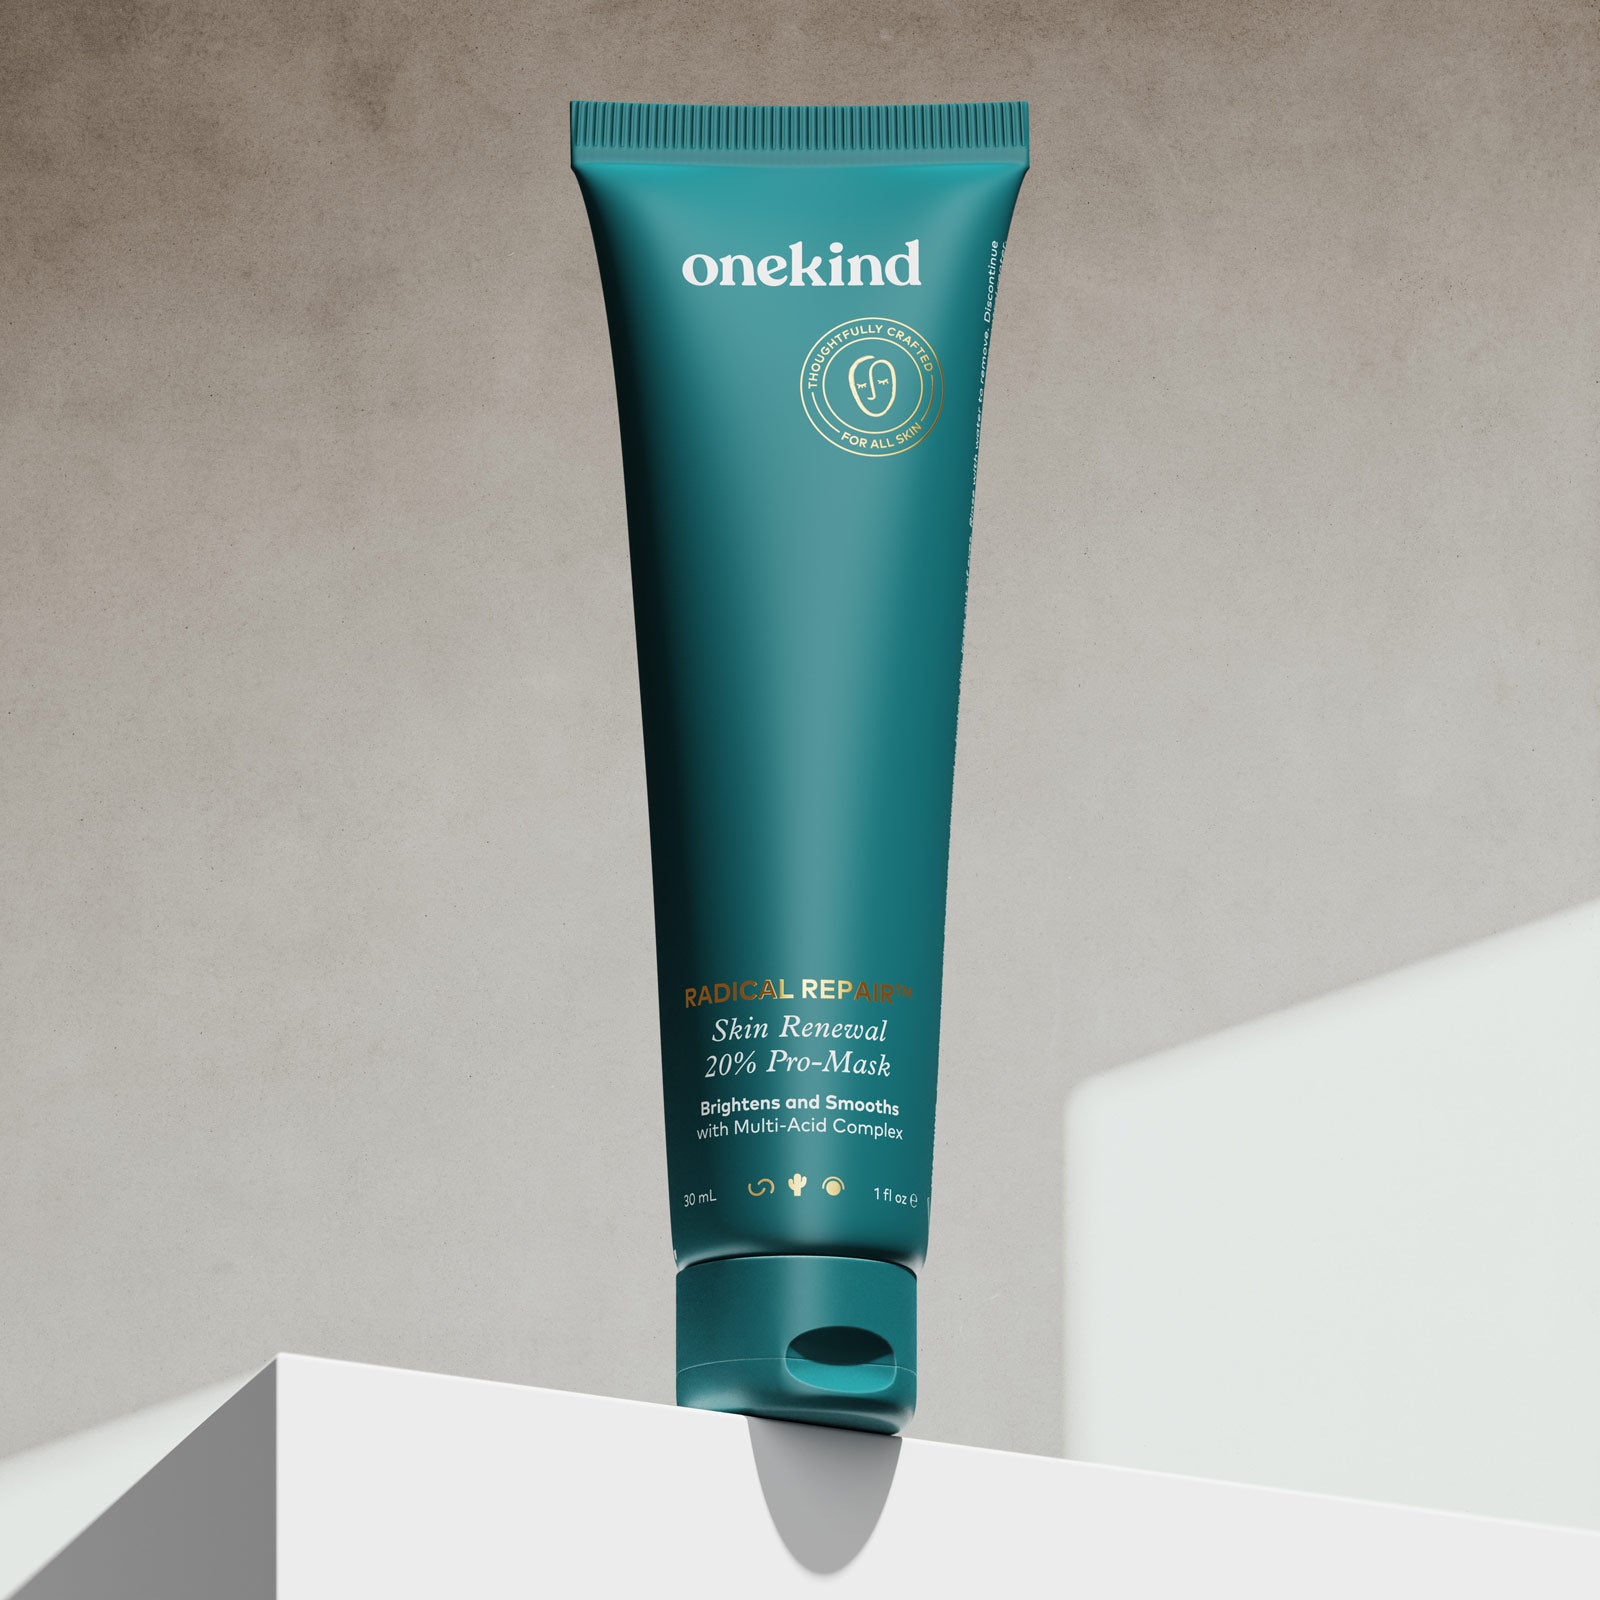 Onekind Radical Repair™ Skin Renewal 20% Pro-Mask